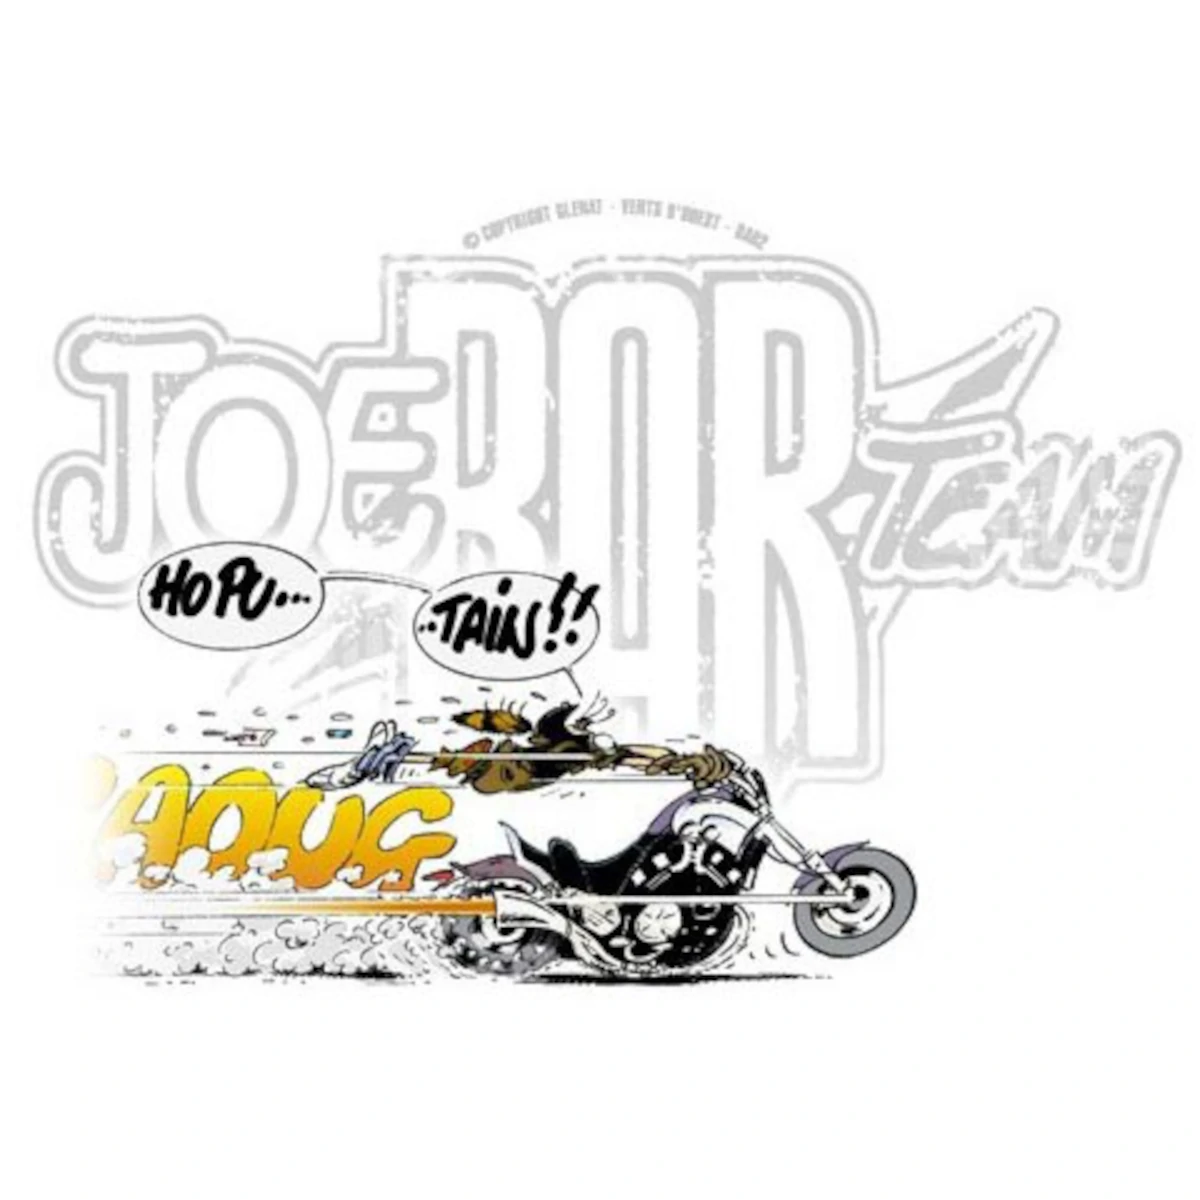 Joe bar team - Équipement moto